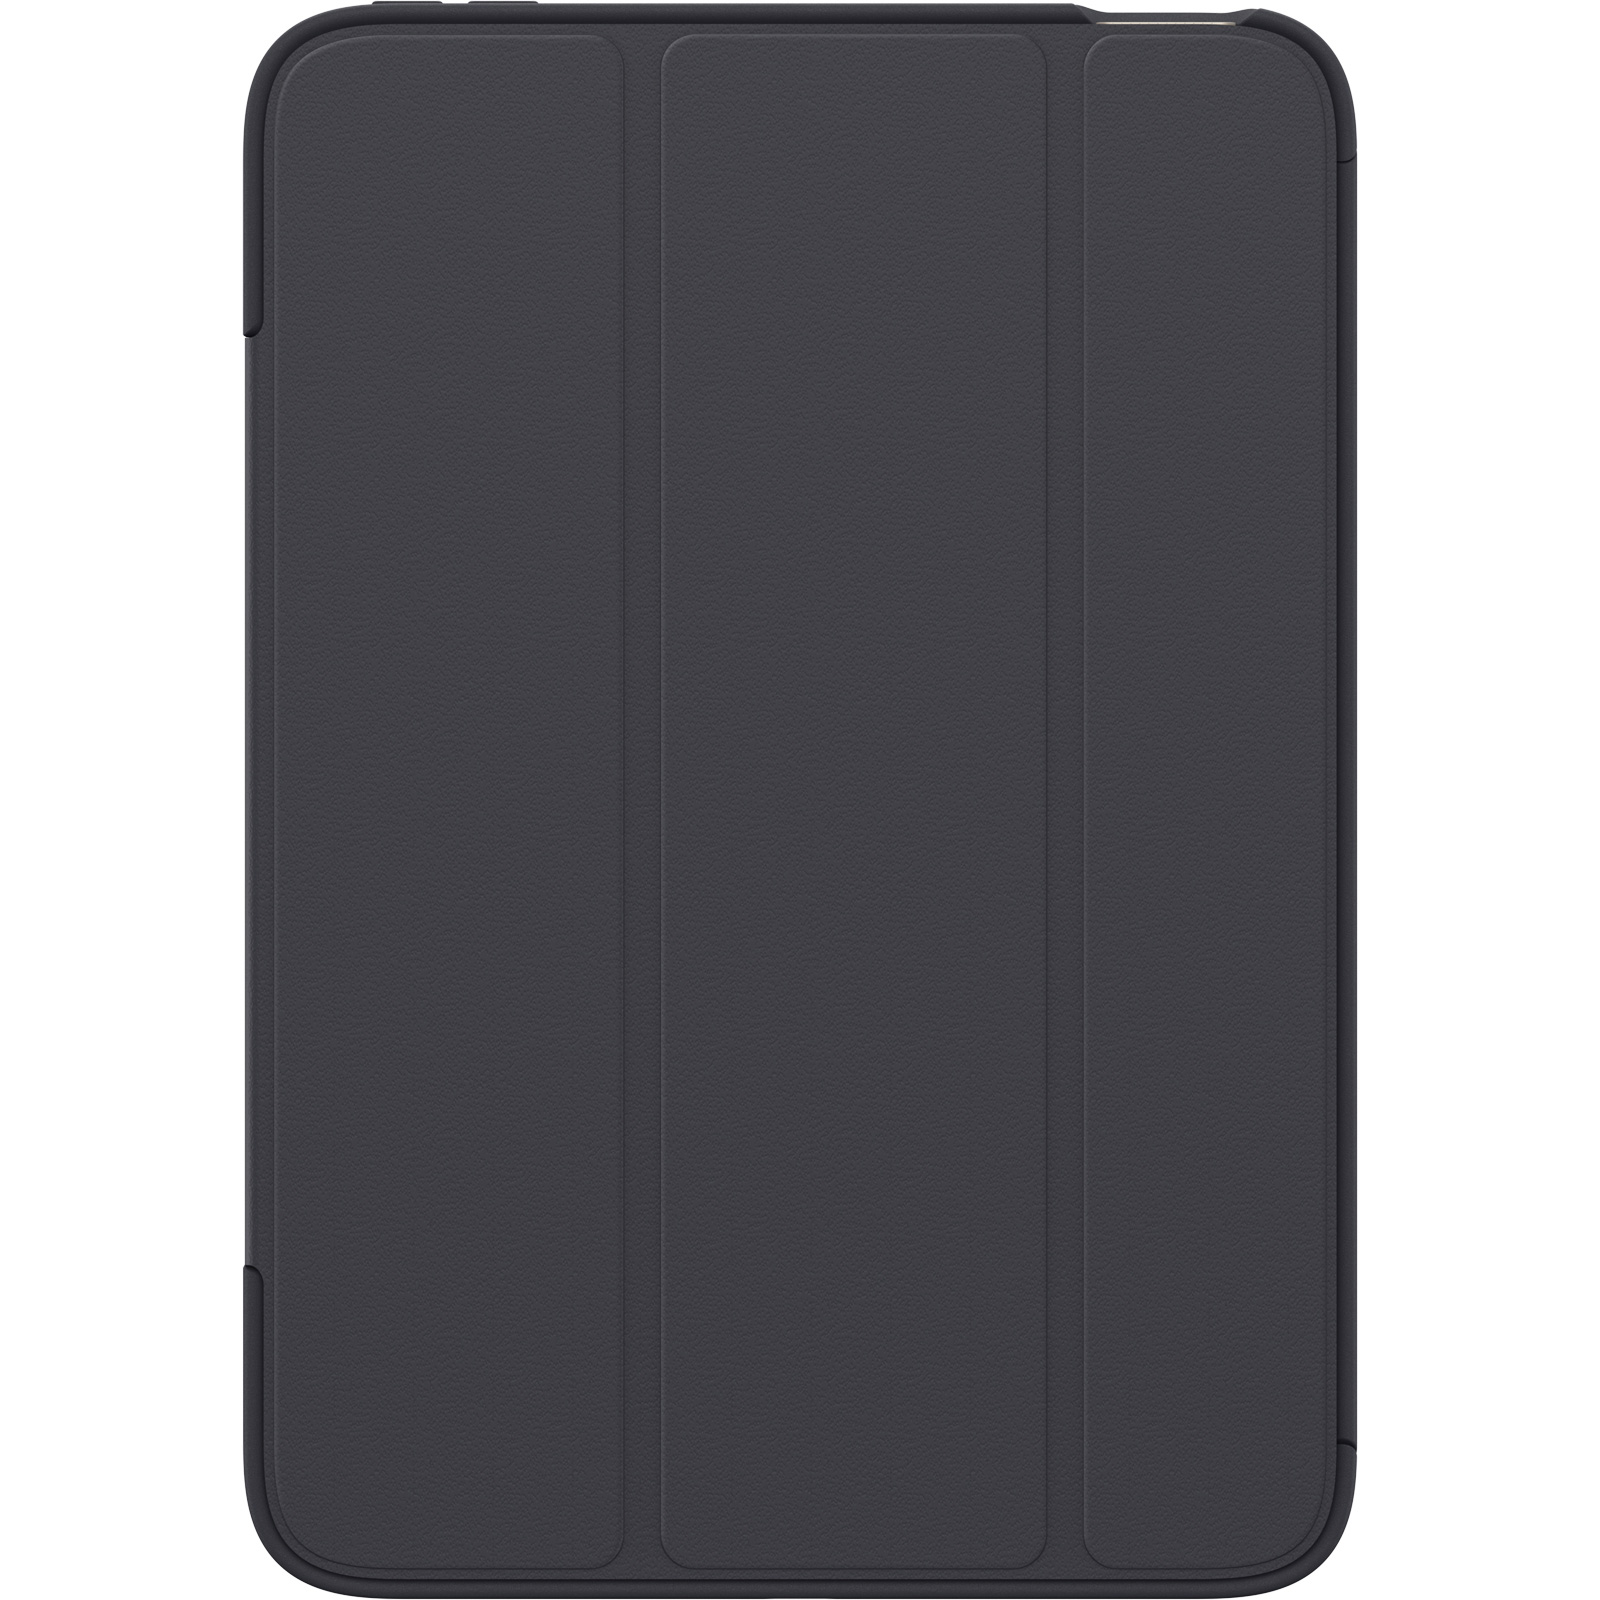 Coque de série Rebond Hybrid pour iPad mini 6 (2021)